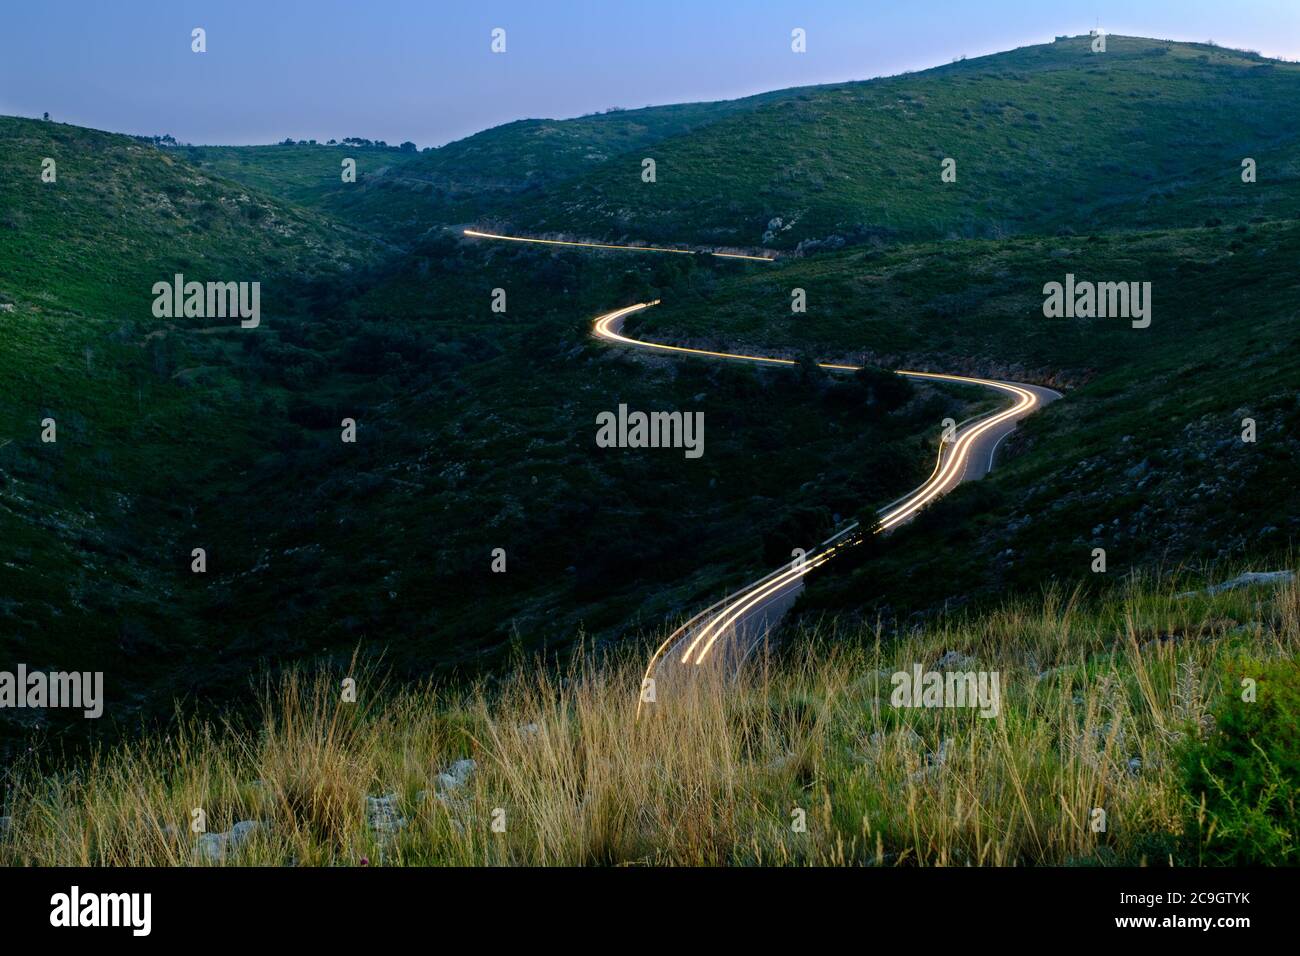 sentiero leggero in auto su strada tortuosa in alta montagna, guida a rischio notturno Foto Stock